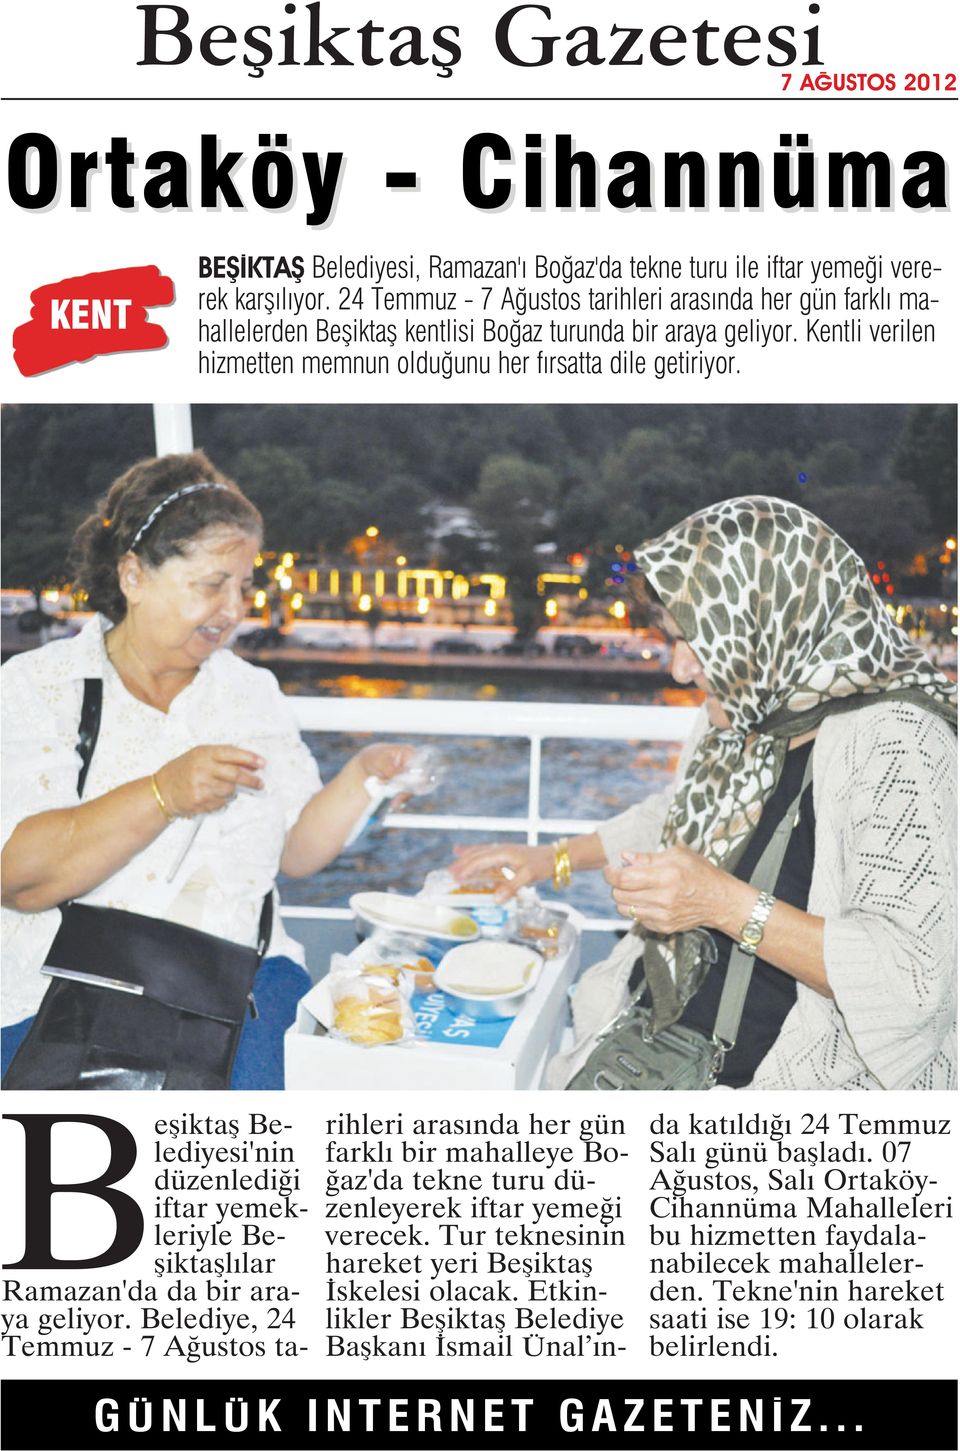 Beşiktaş Belediyesi'nin düzenlediği iftar yemekleriyle Beşiktaşlılar Ramazan'da da bir araya geliyor.